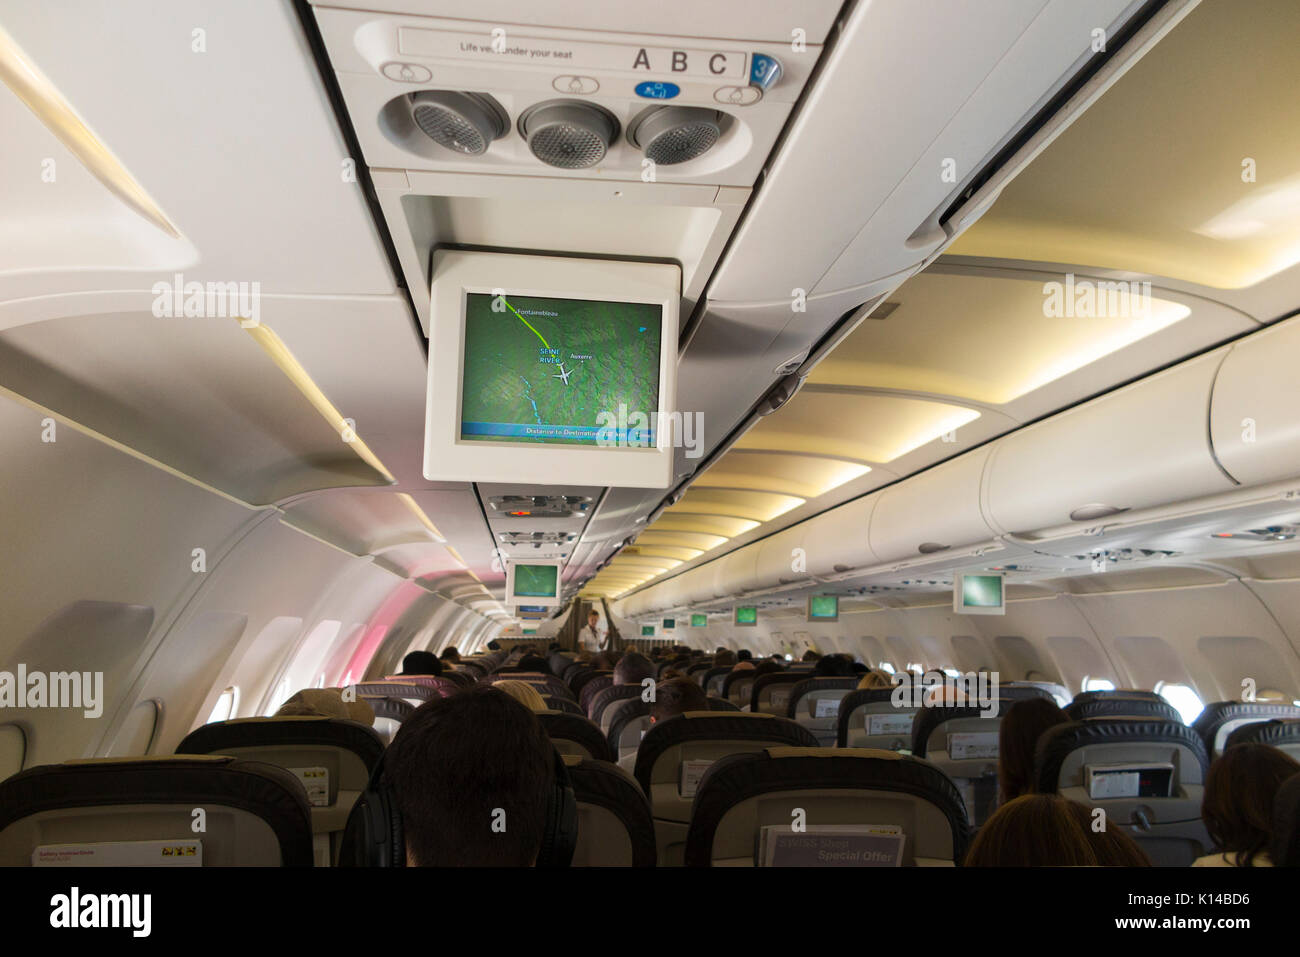 Dentro de un avión / interior de la cabina de un avión con el monitor de visualización de mapa de la posición de vuelo en una pantalla de televisión que muestra la posición de aviones arriba / sobre Francia. Foto de stock